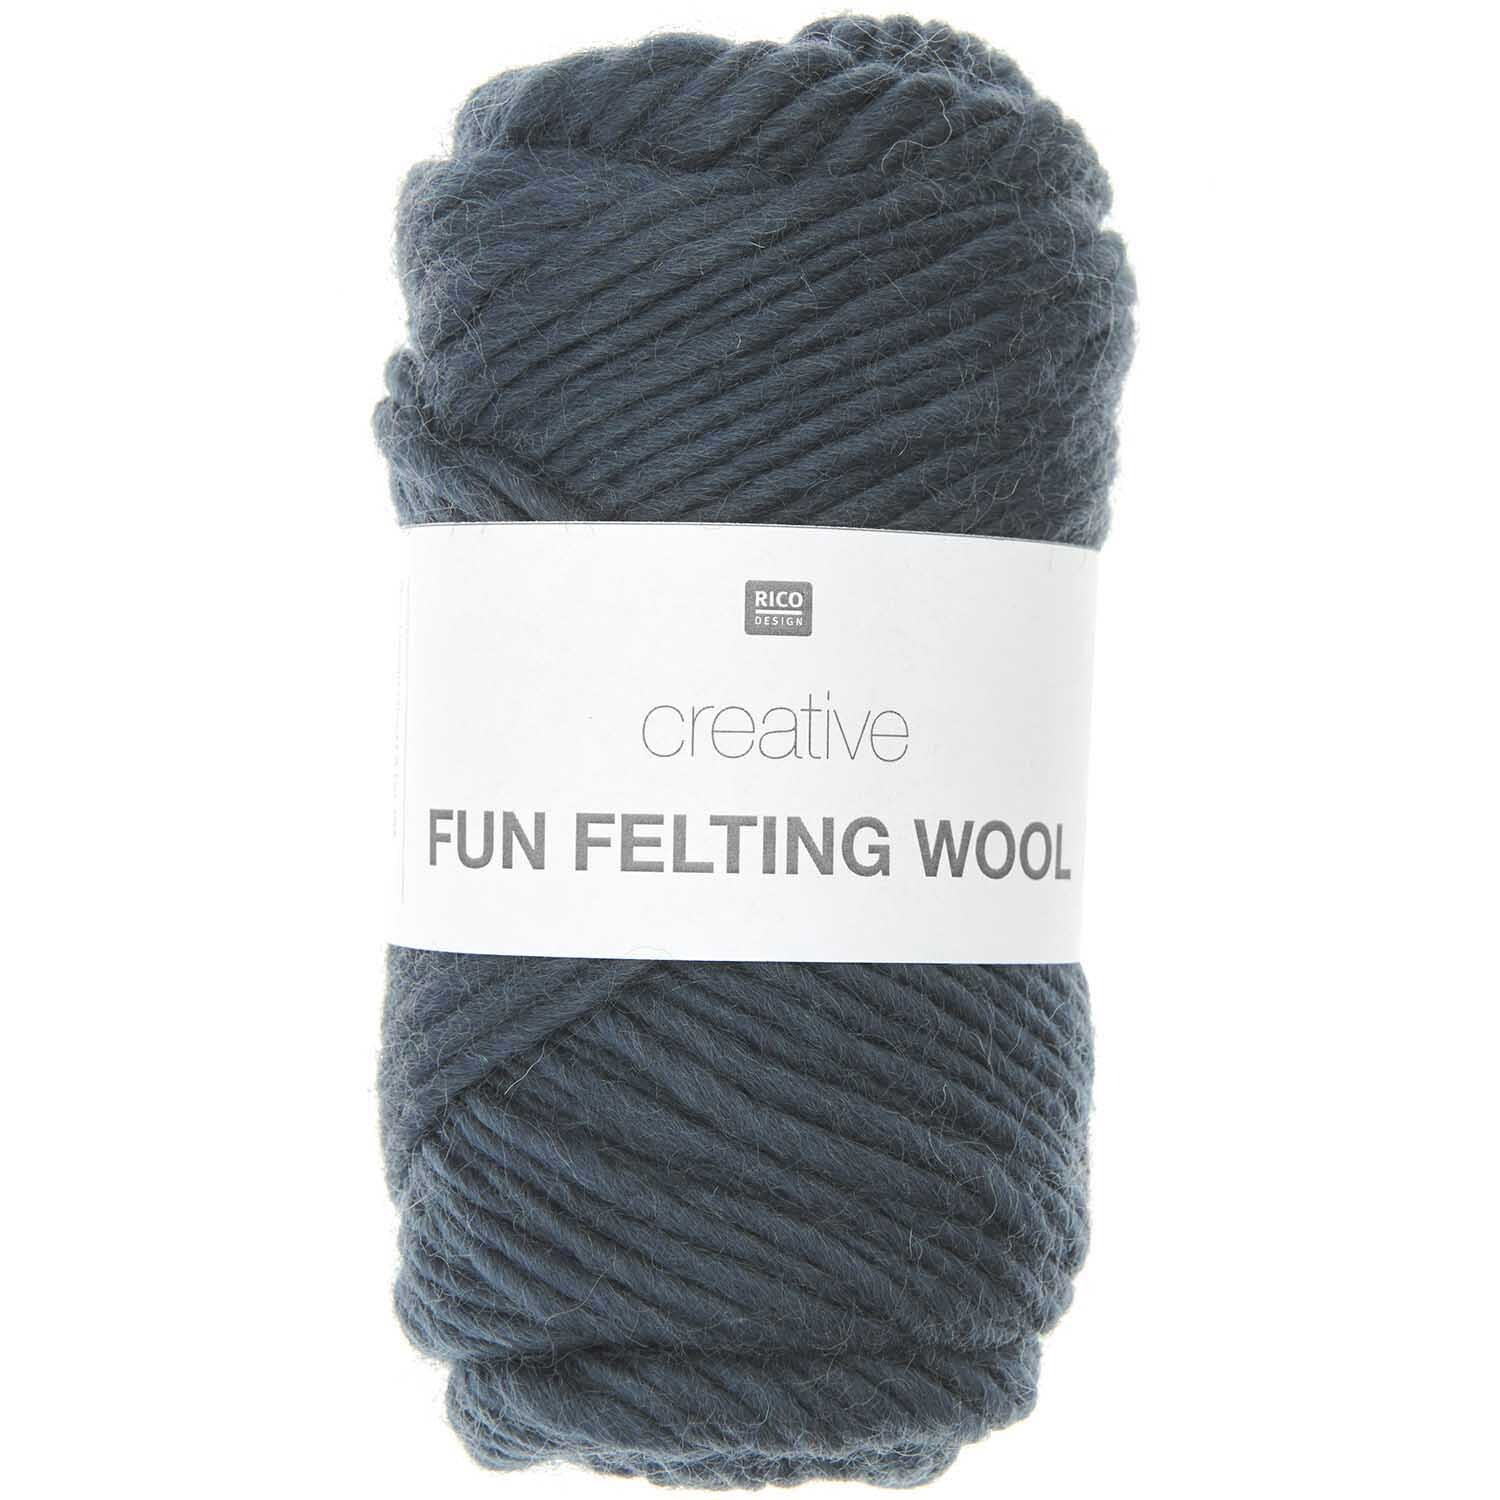 Creative Fun Felting Wool